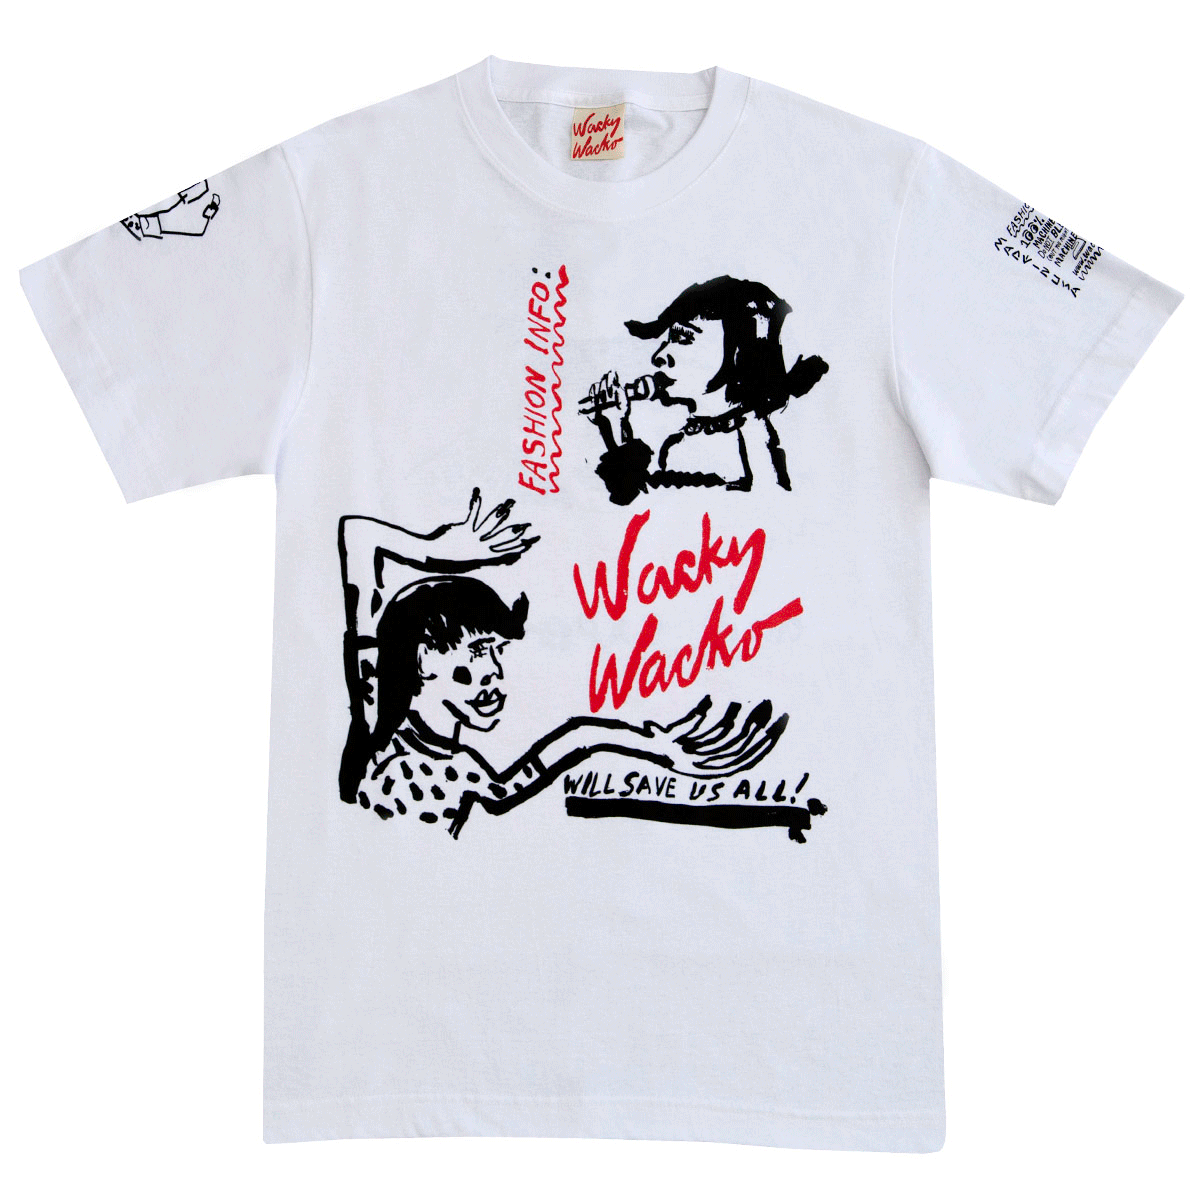 Wacky Wacko Ten Year Anniversary T-Shirt